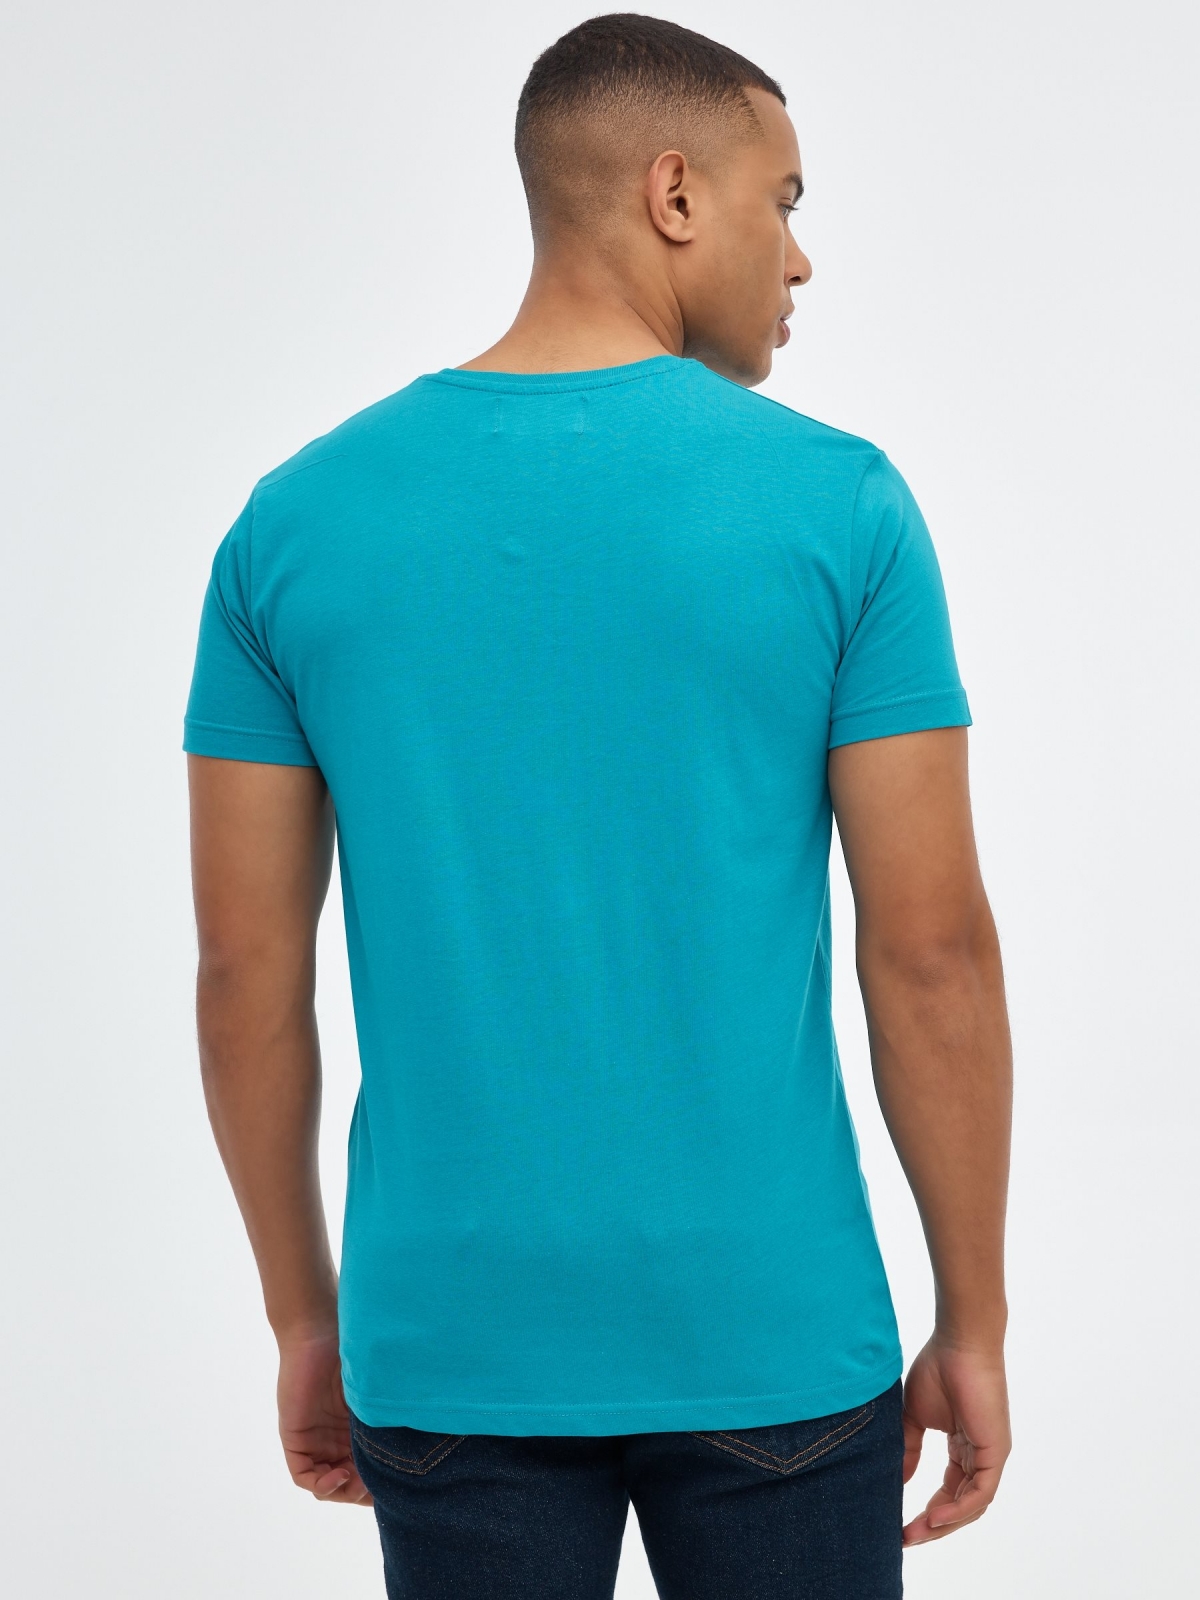 Camiseta básica "INSIDE" azul vista media trasera